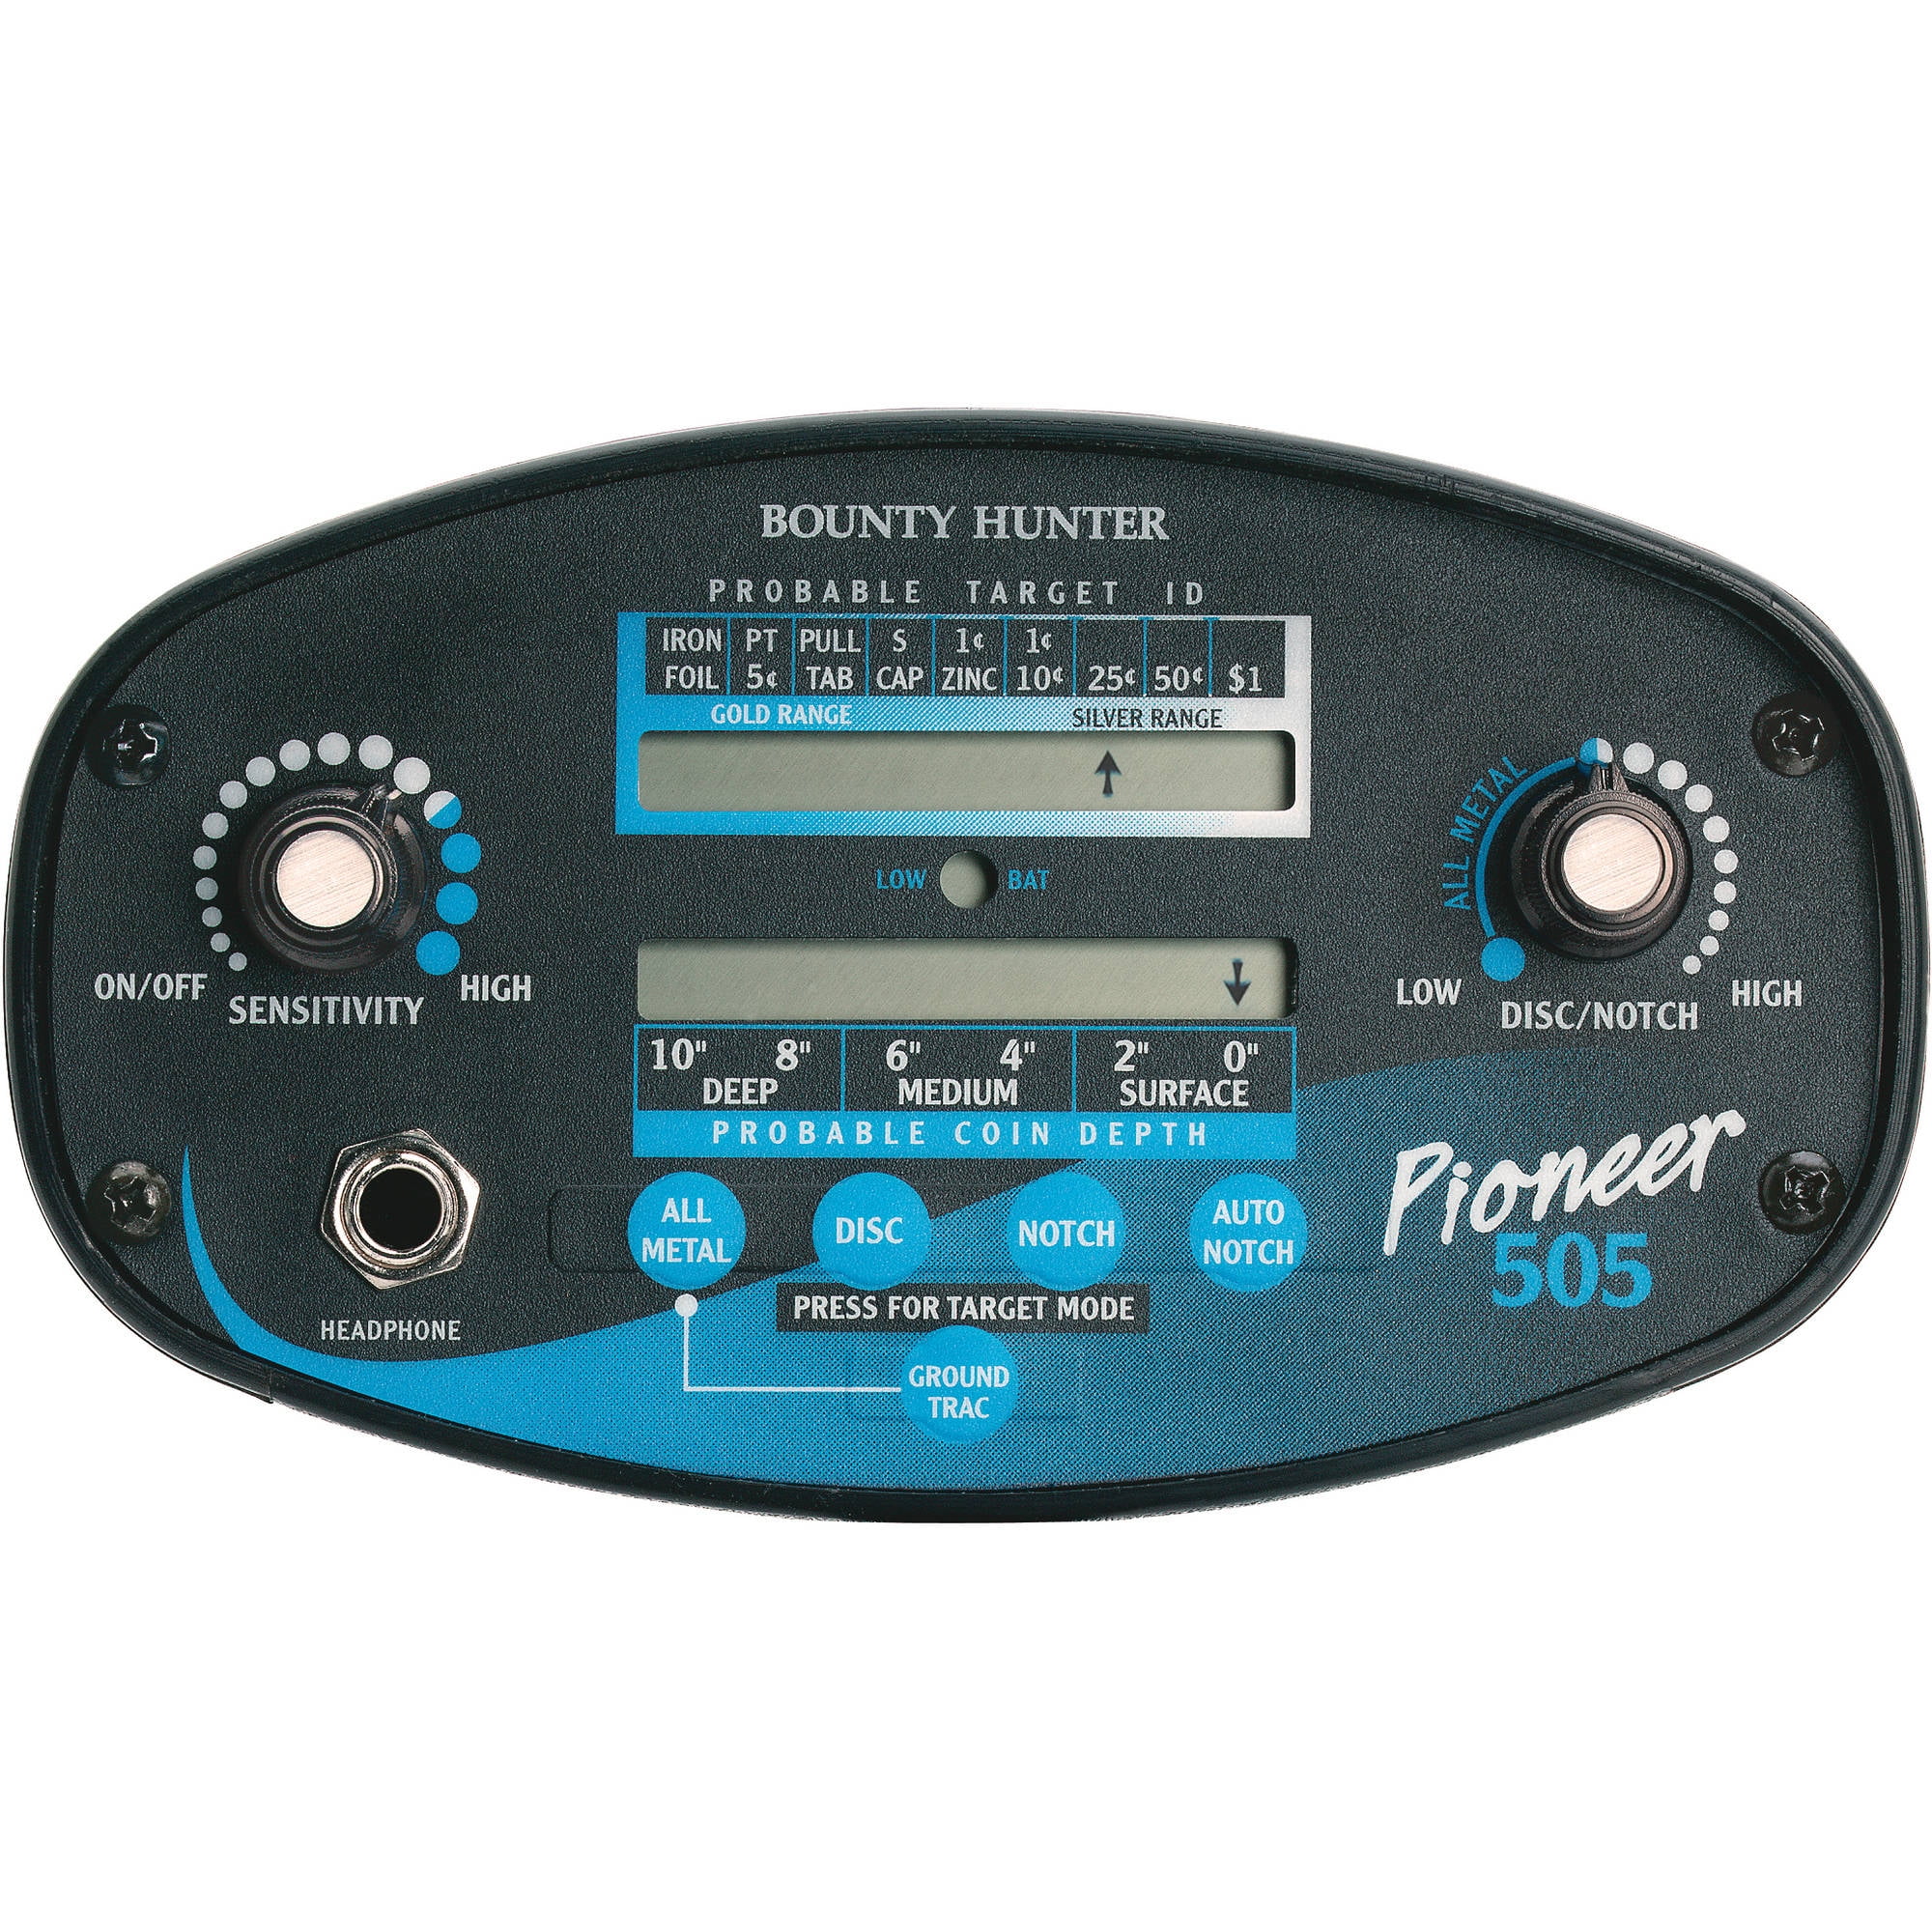 Bounty Hunter Pioneer EX Metal Detector - Digital (Black)